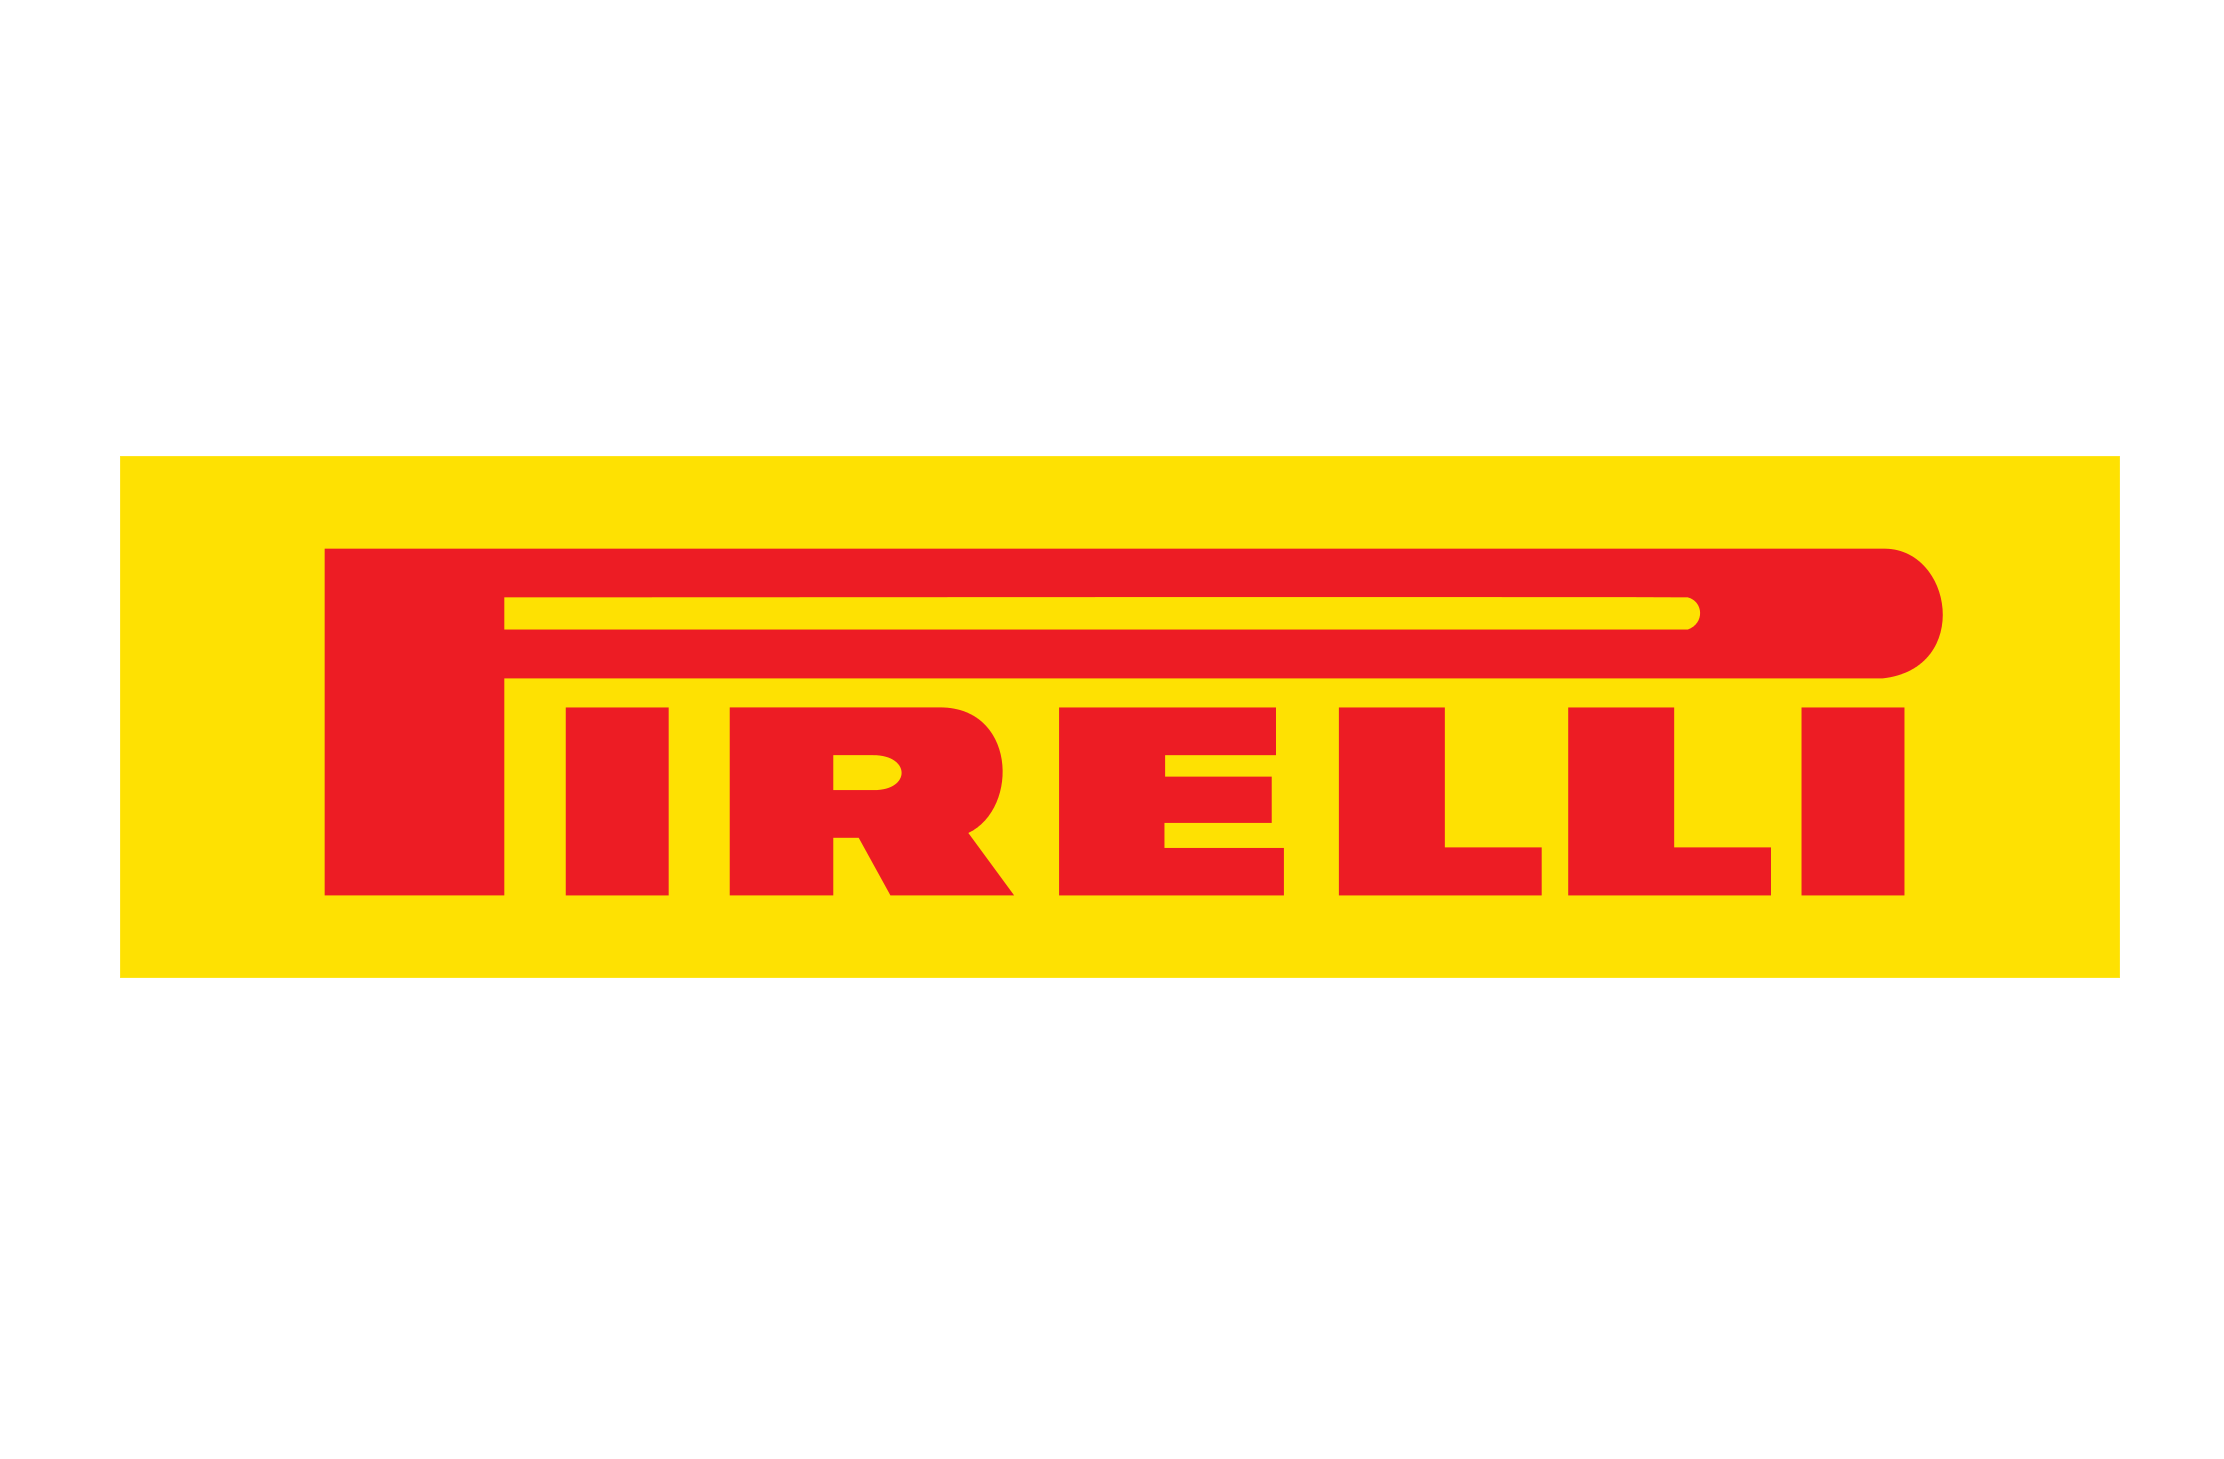 Mudança da nova sede Pirelli S/A.